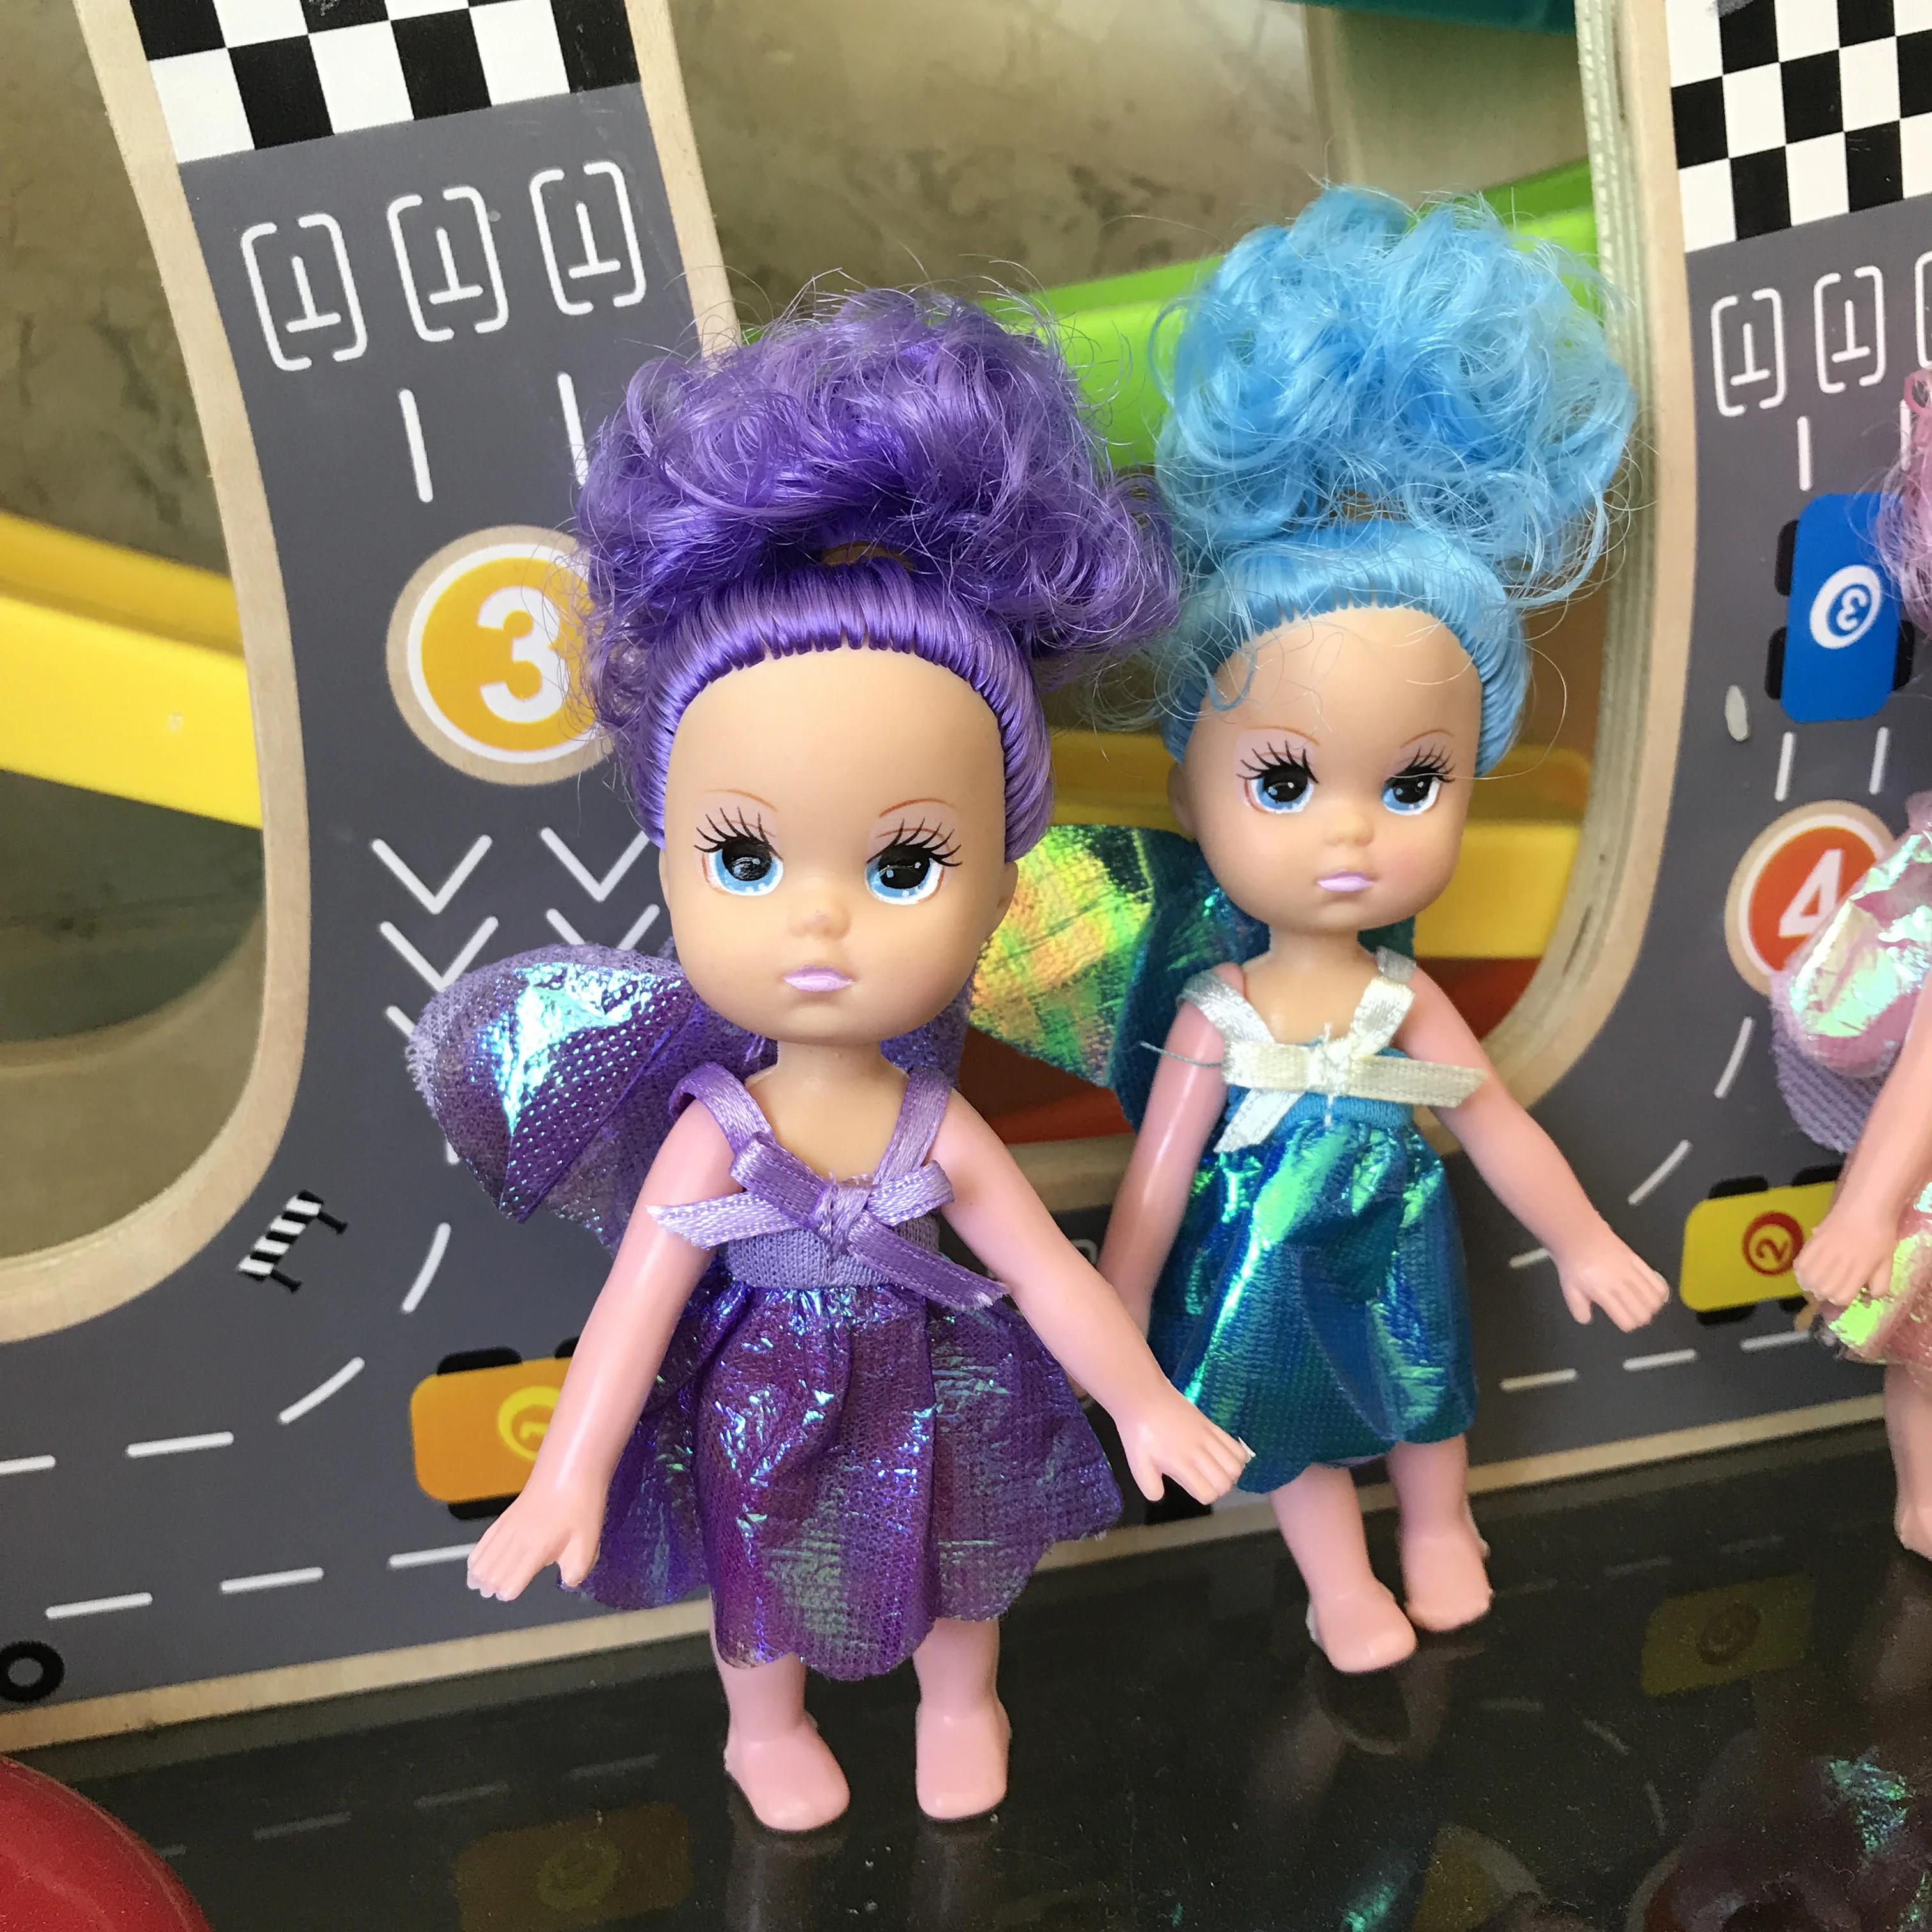 15 см пластиковая игрушка маленькая Келли моделирование кукла девочка принцесса детские игрушки куклы для девочек